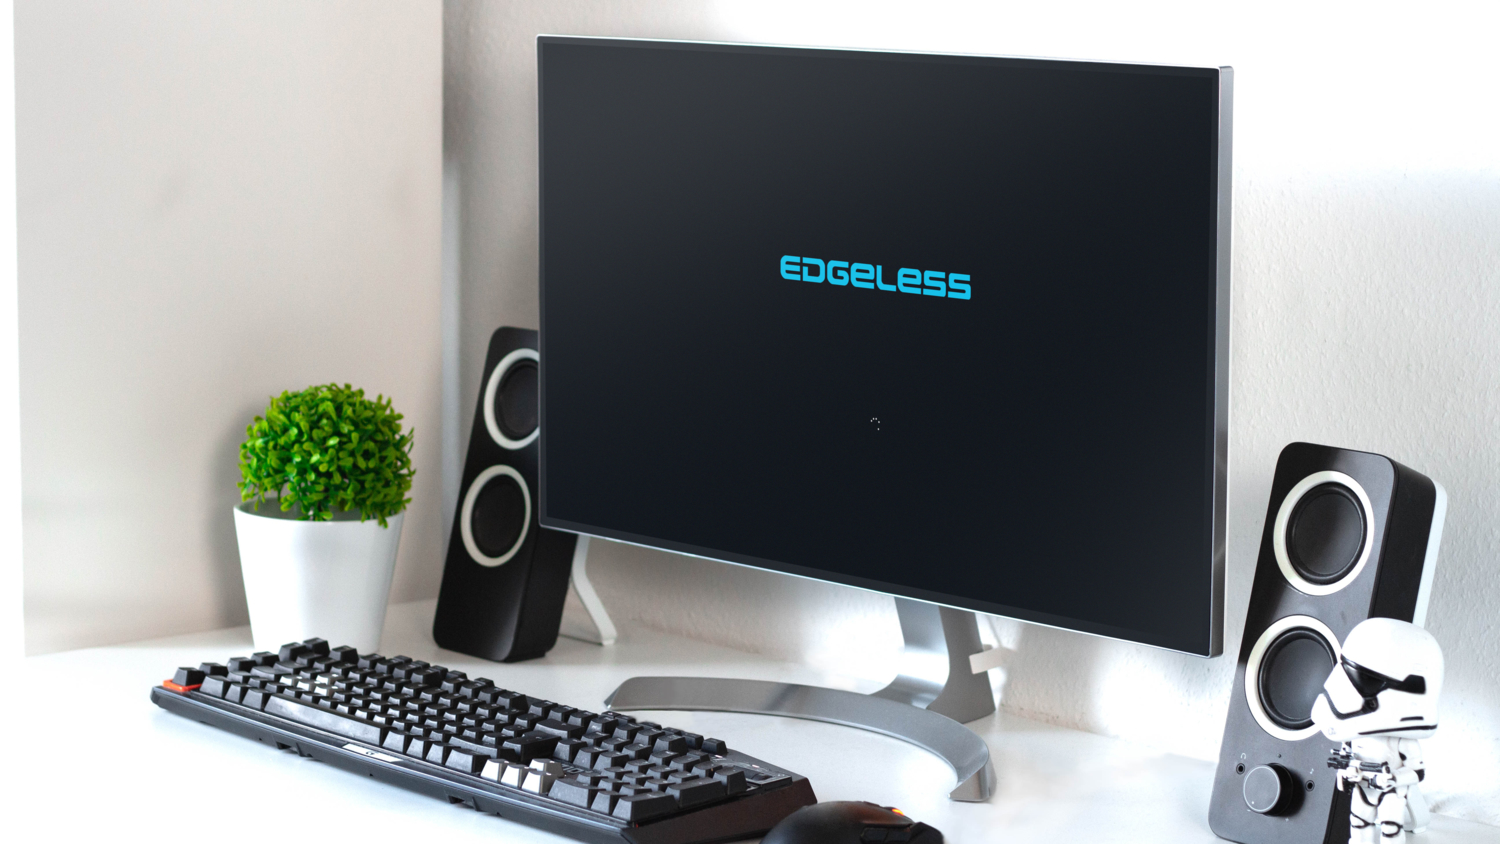 Edgeless - 强大而优雅的PE工具